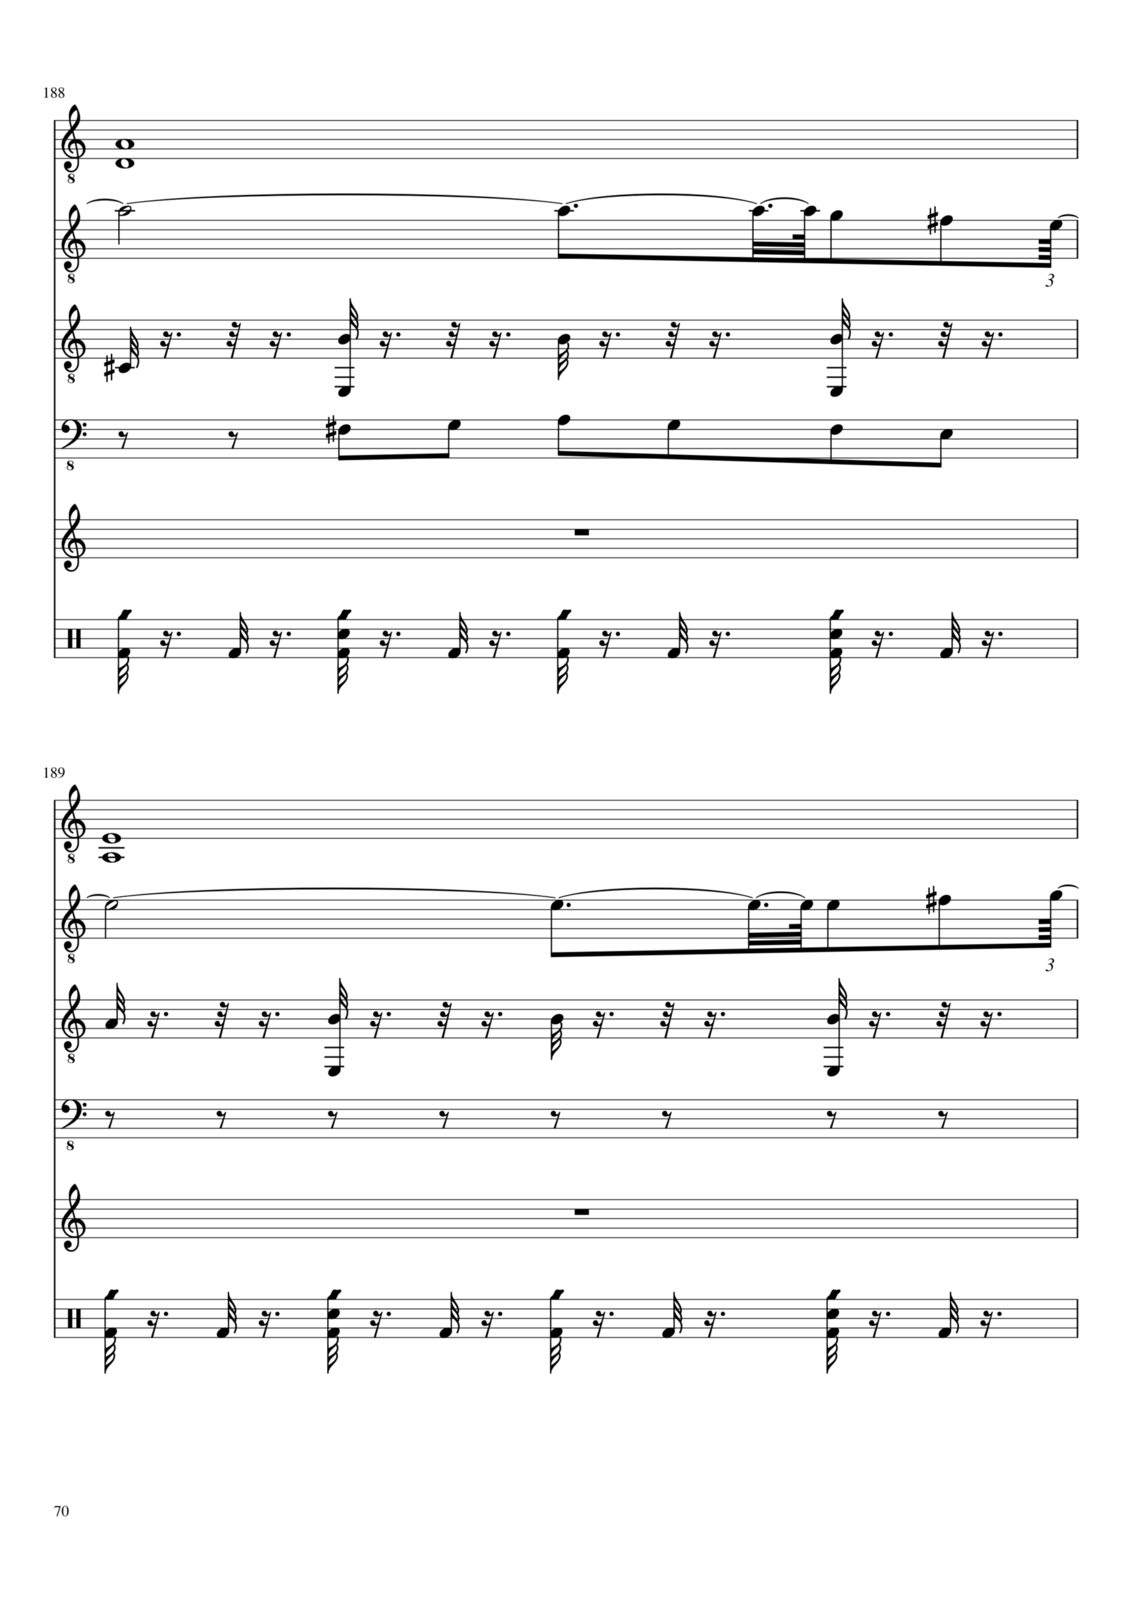 Kogda horonyat molodyih slide, Image 1